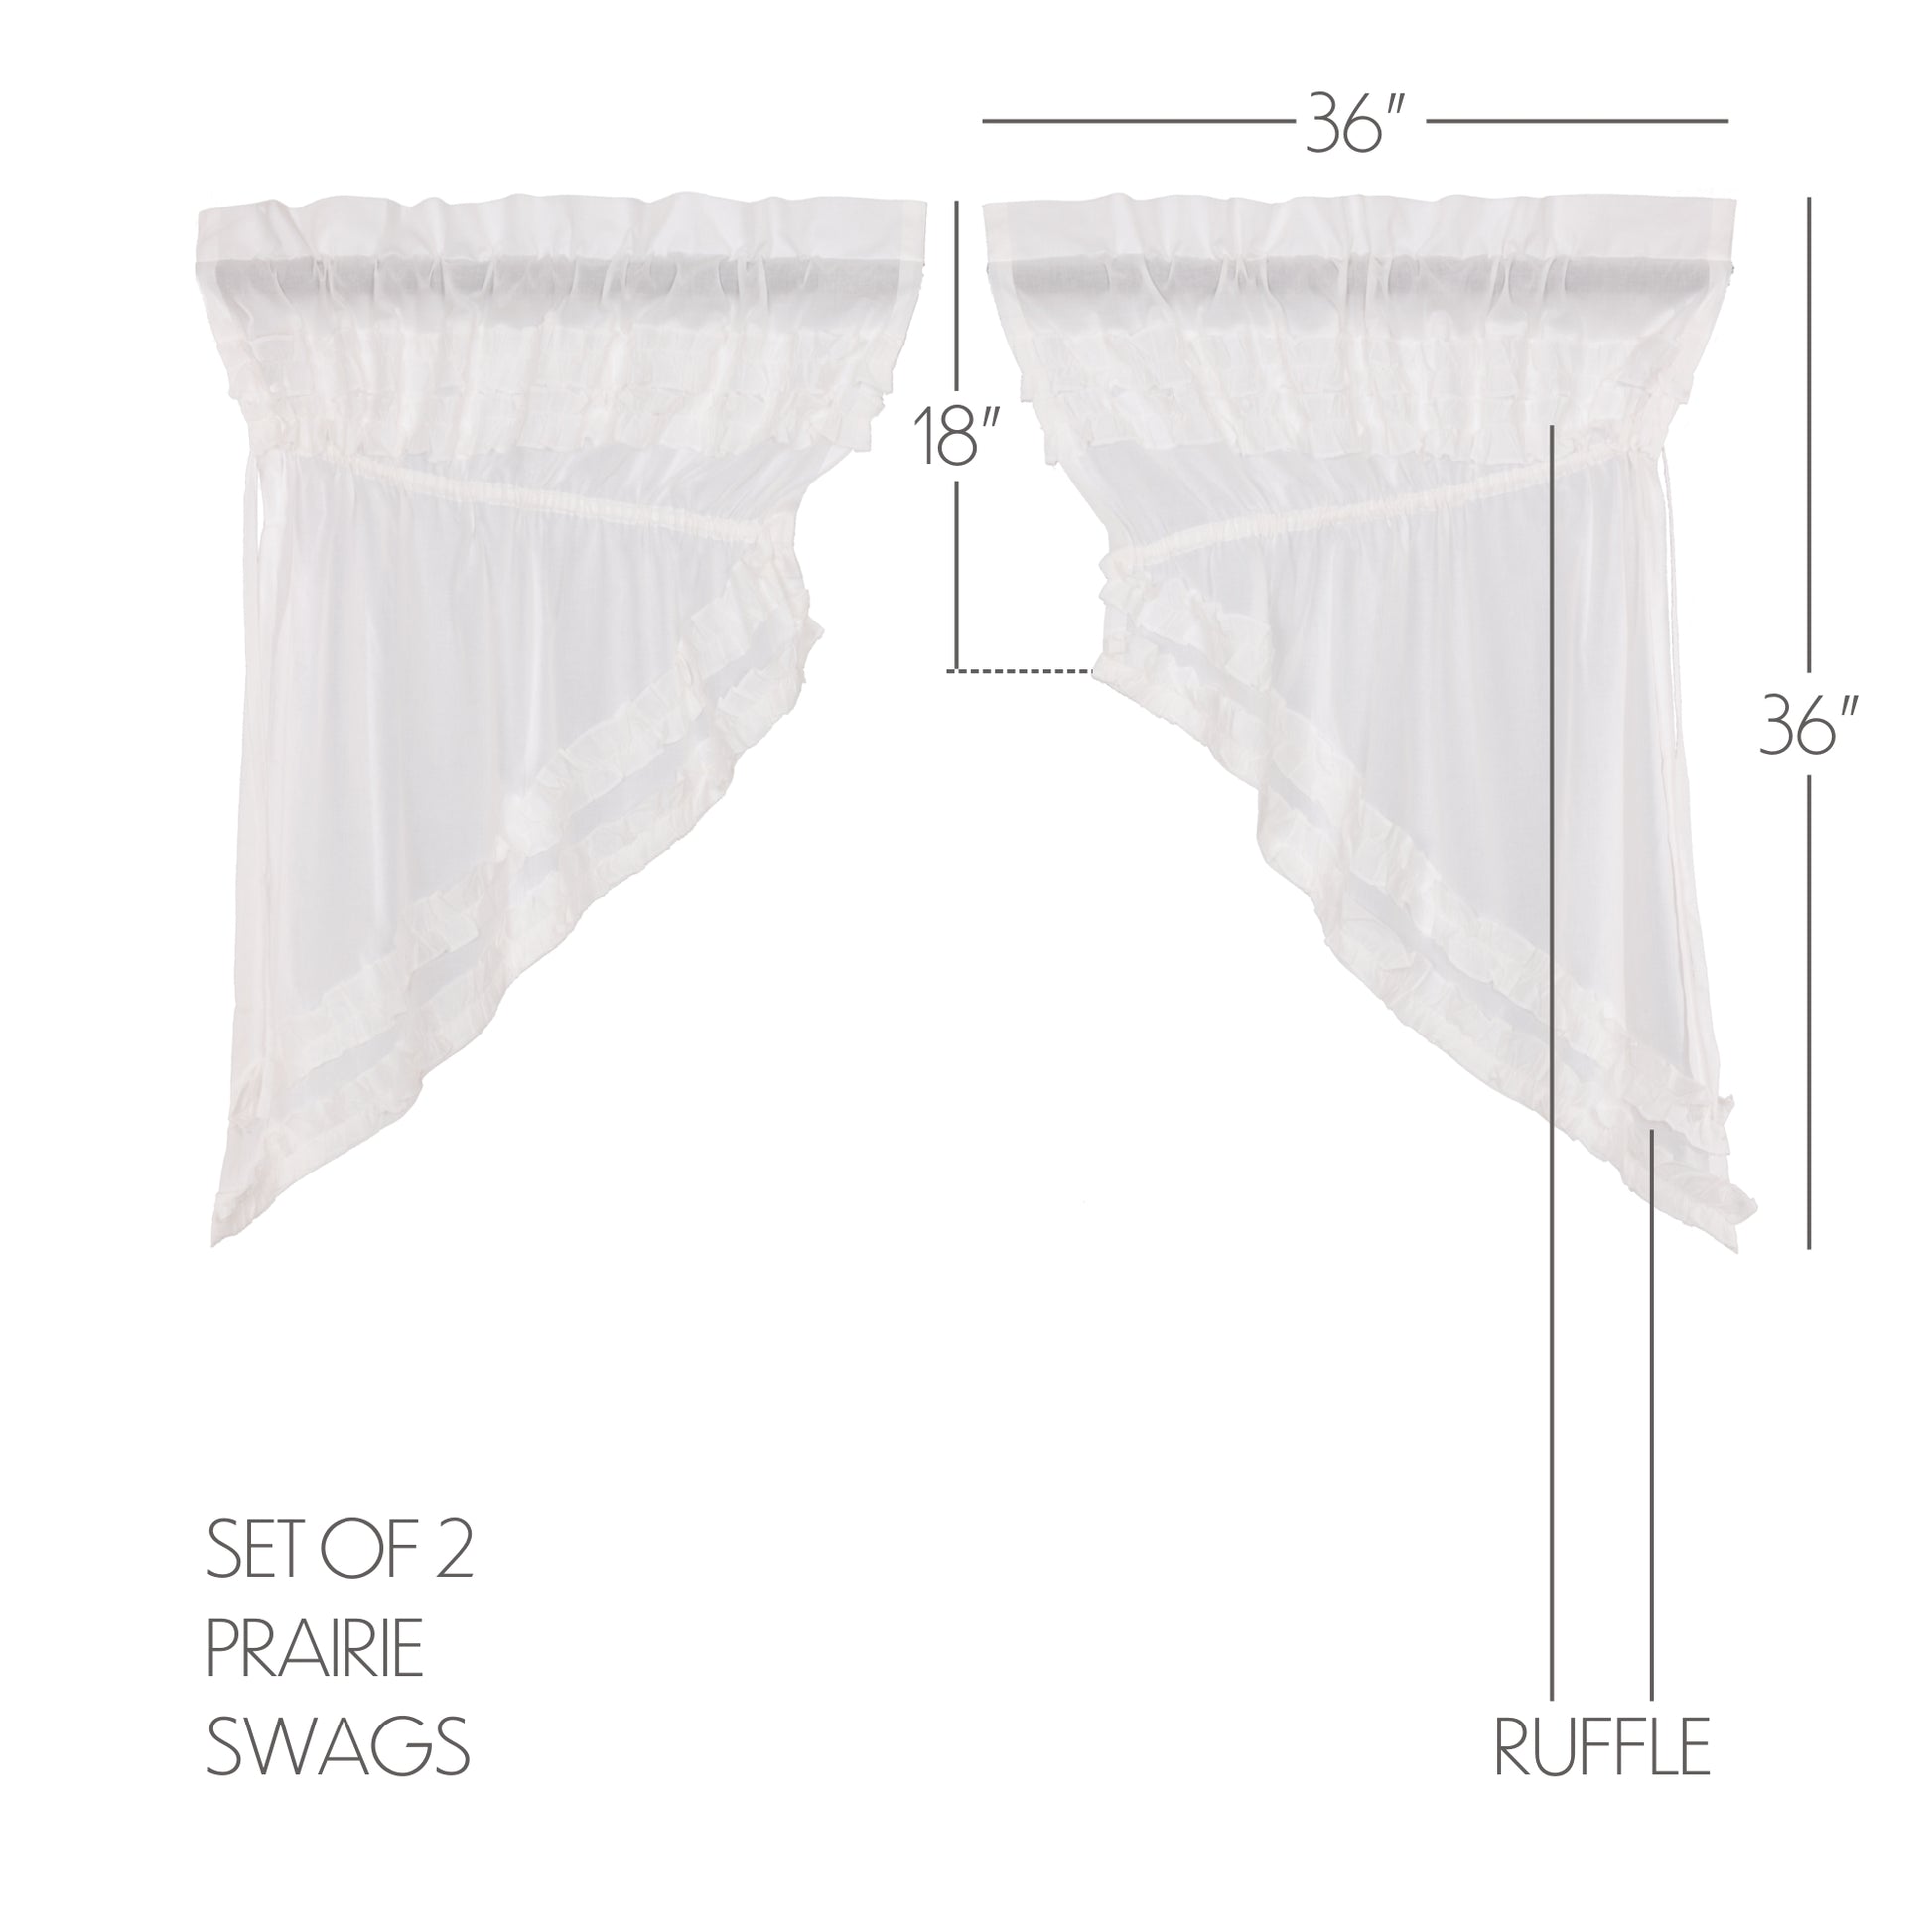 51402-White-Ruffled-Sheer-Petticoat-Prairie-Swag-Set-of-2-36x36x18-image-1